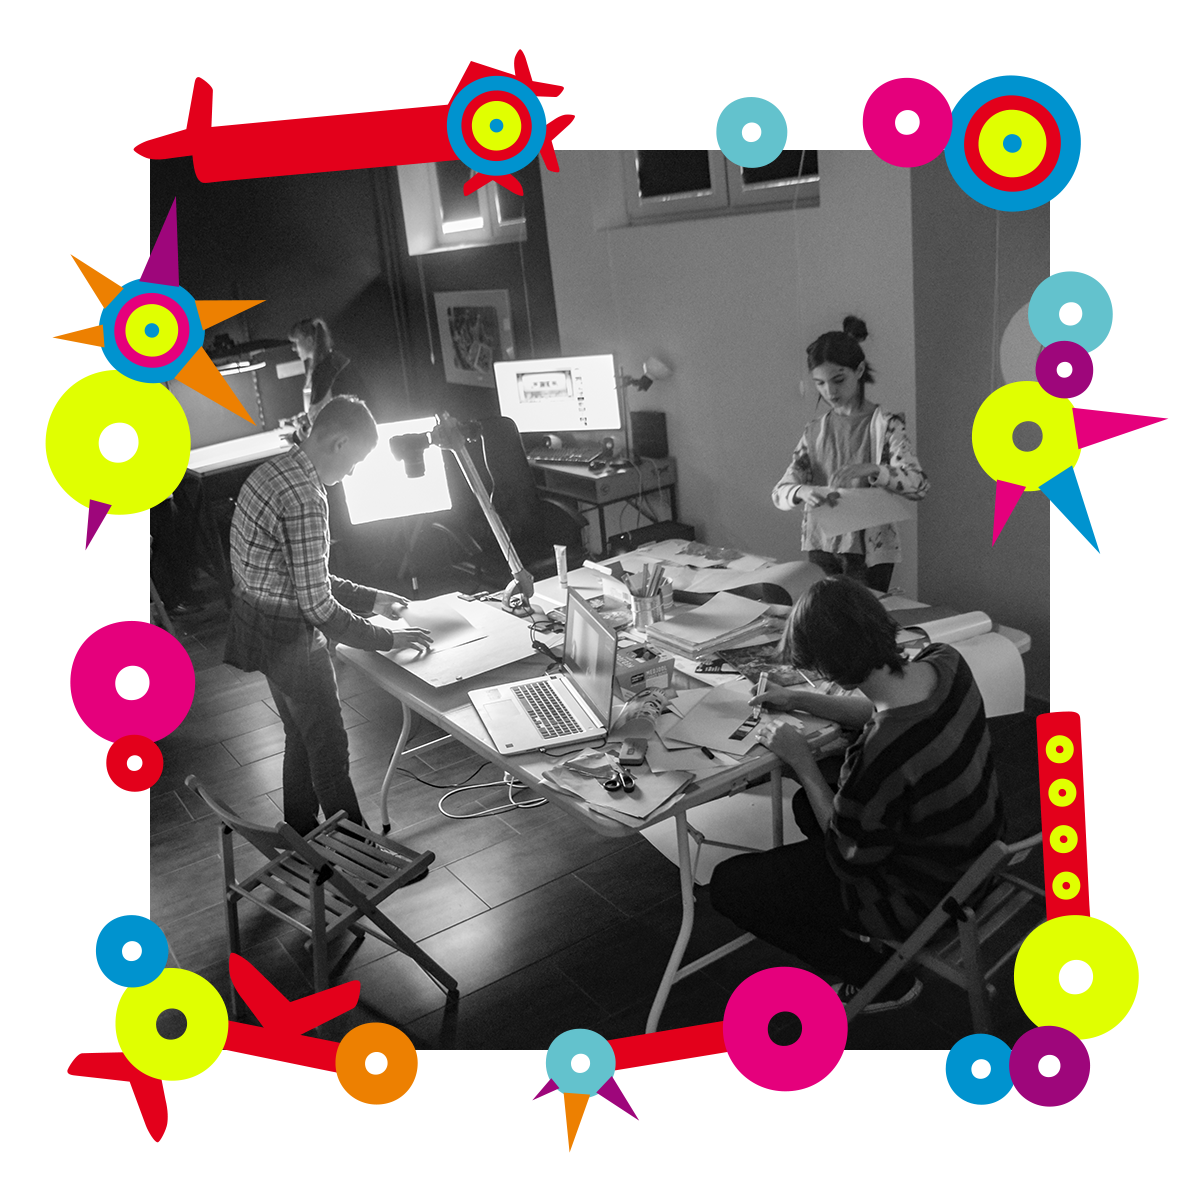 Na zdjęciu pracownia artystyczna. Trzy osoby nachylają się nad stołem, nad którym leżą kartki, komputery. Jedna z nich rysuje coś. Dookoła zdjęcia kolorowa ramka.